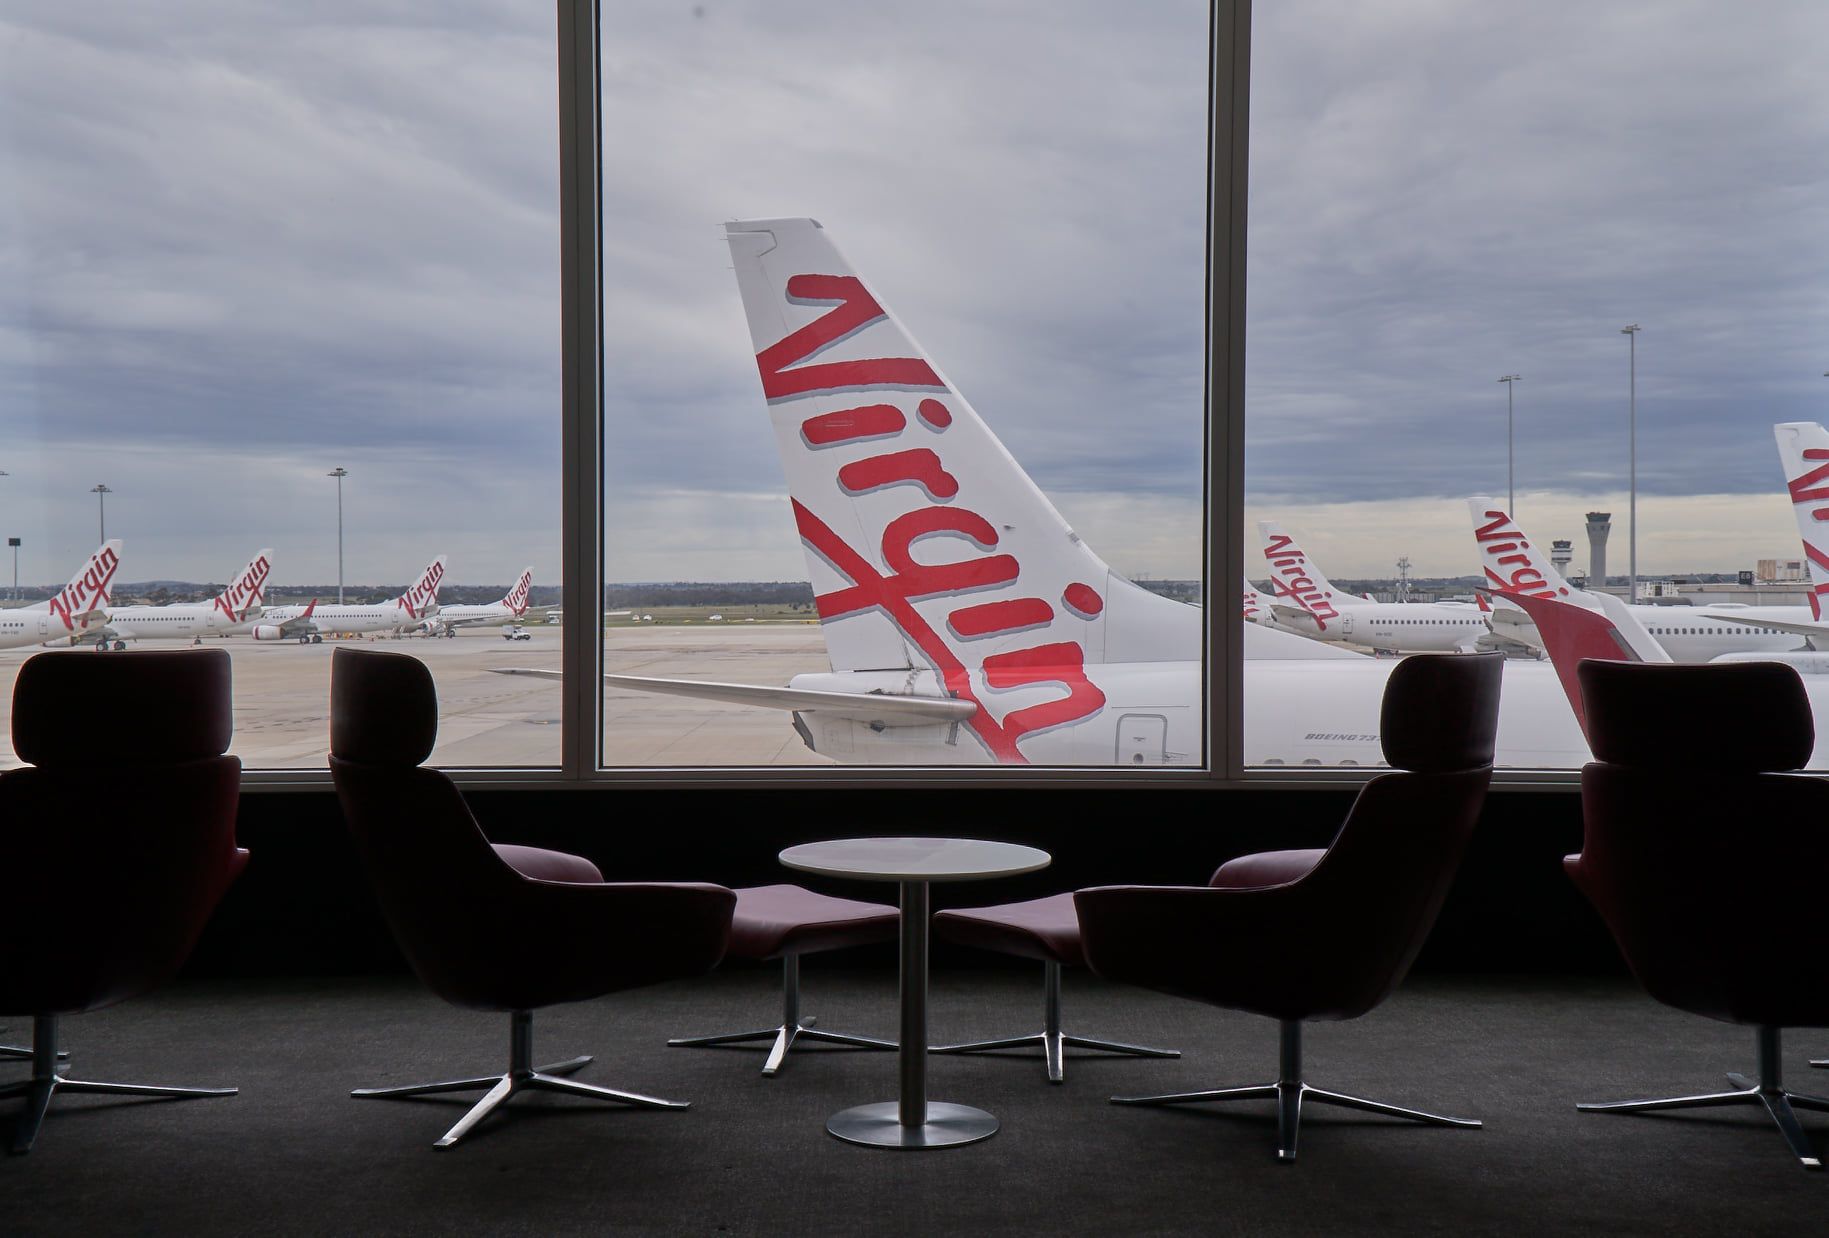 A Virgin Australia Boeing 737 tail seen through an airport terminal window.